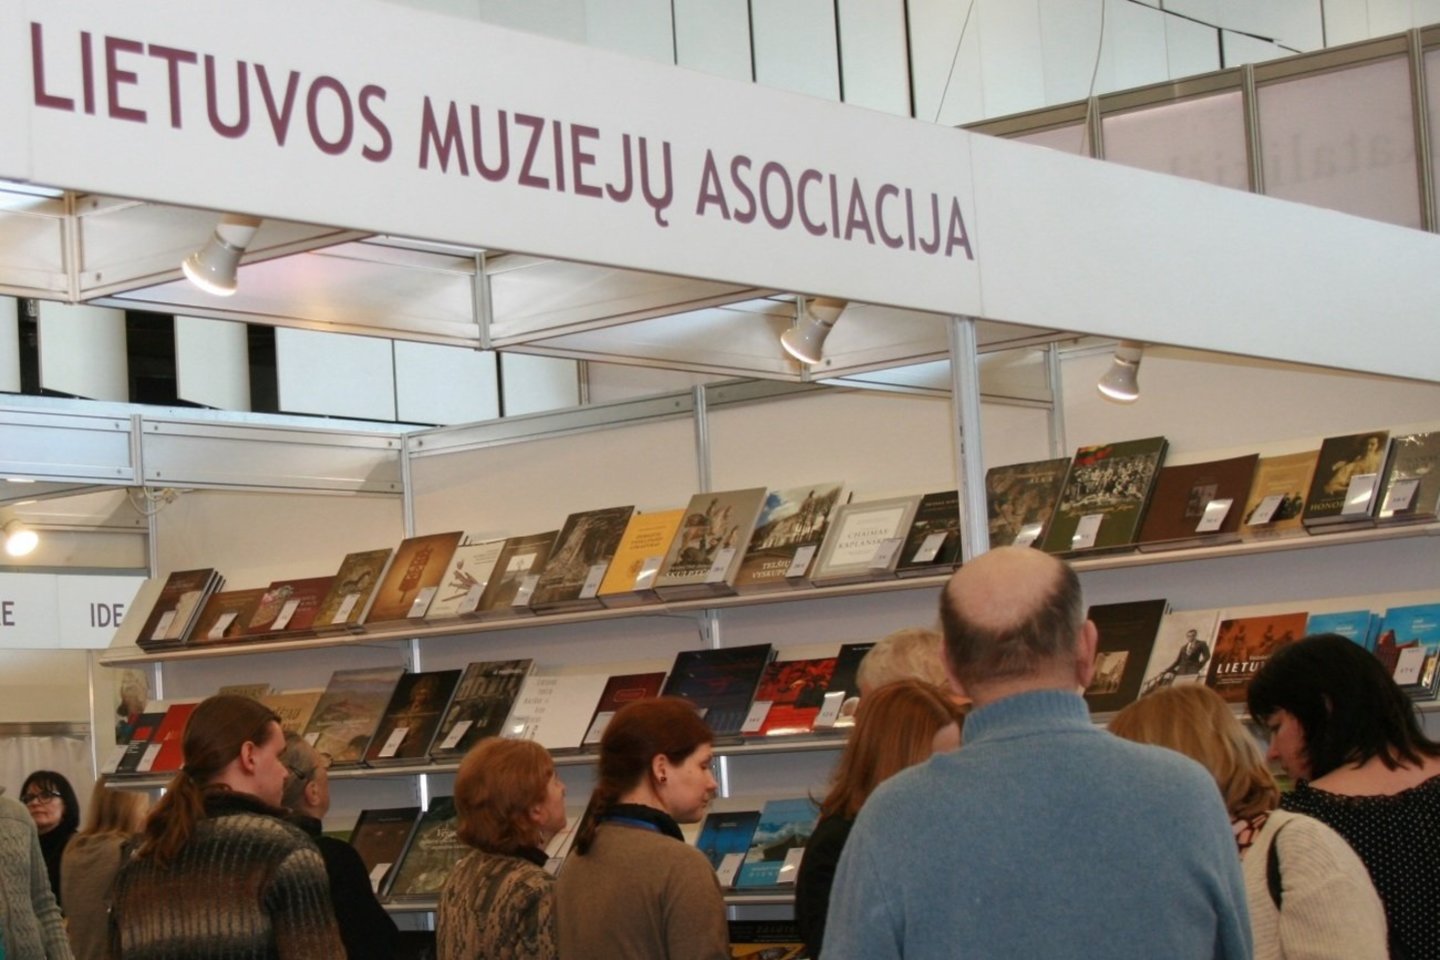 Lietuvos muziejų asociacija Vilniaus knygų mugėje pristatys beveik 250 pavadinimų leidinių.<br> Nuotr. iš LMA archyvo